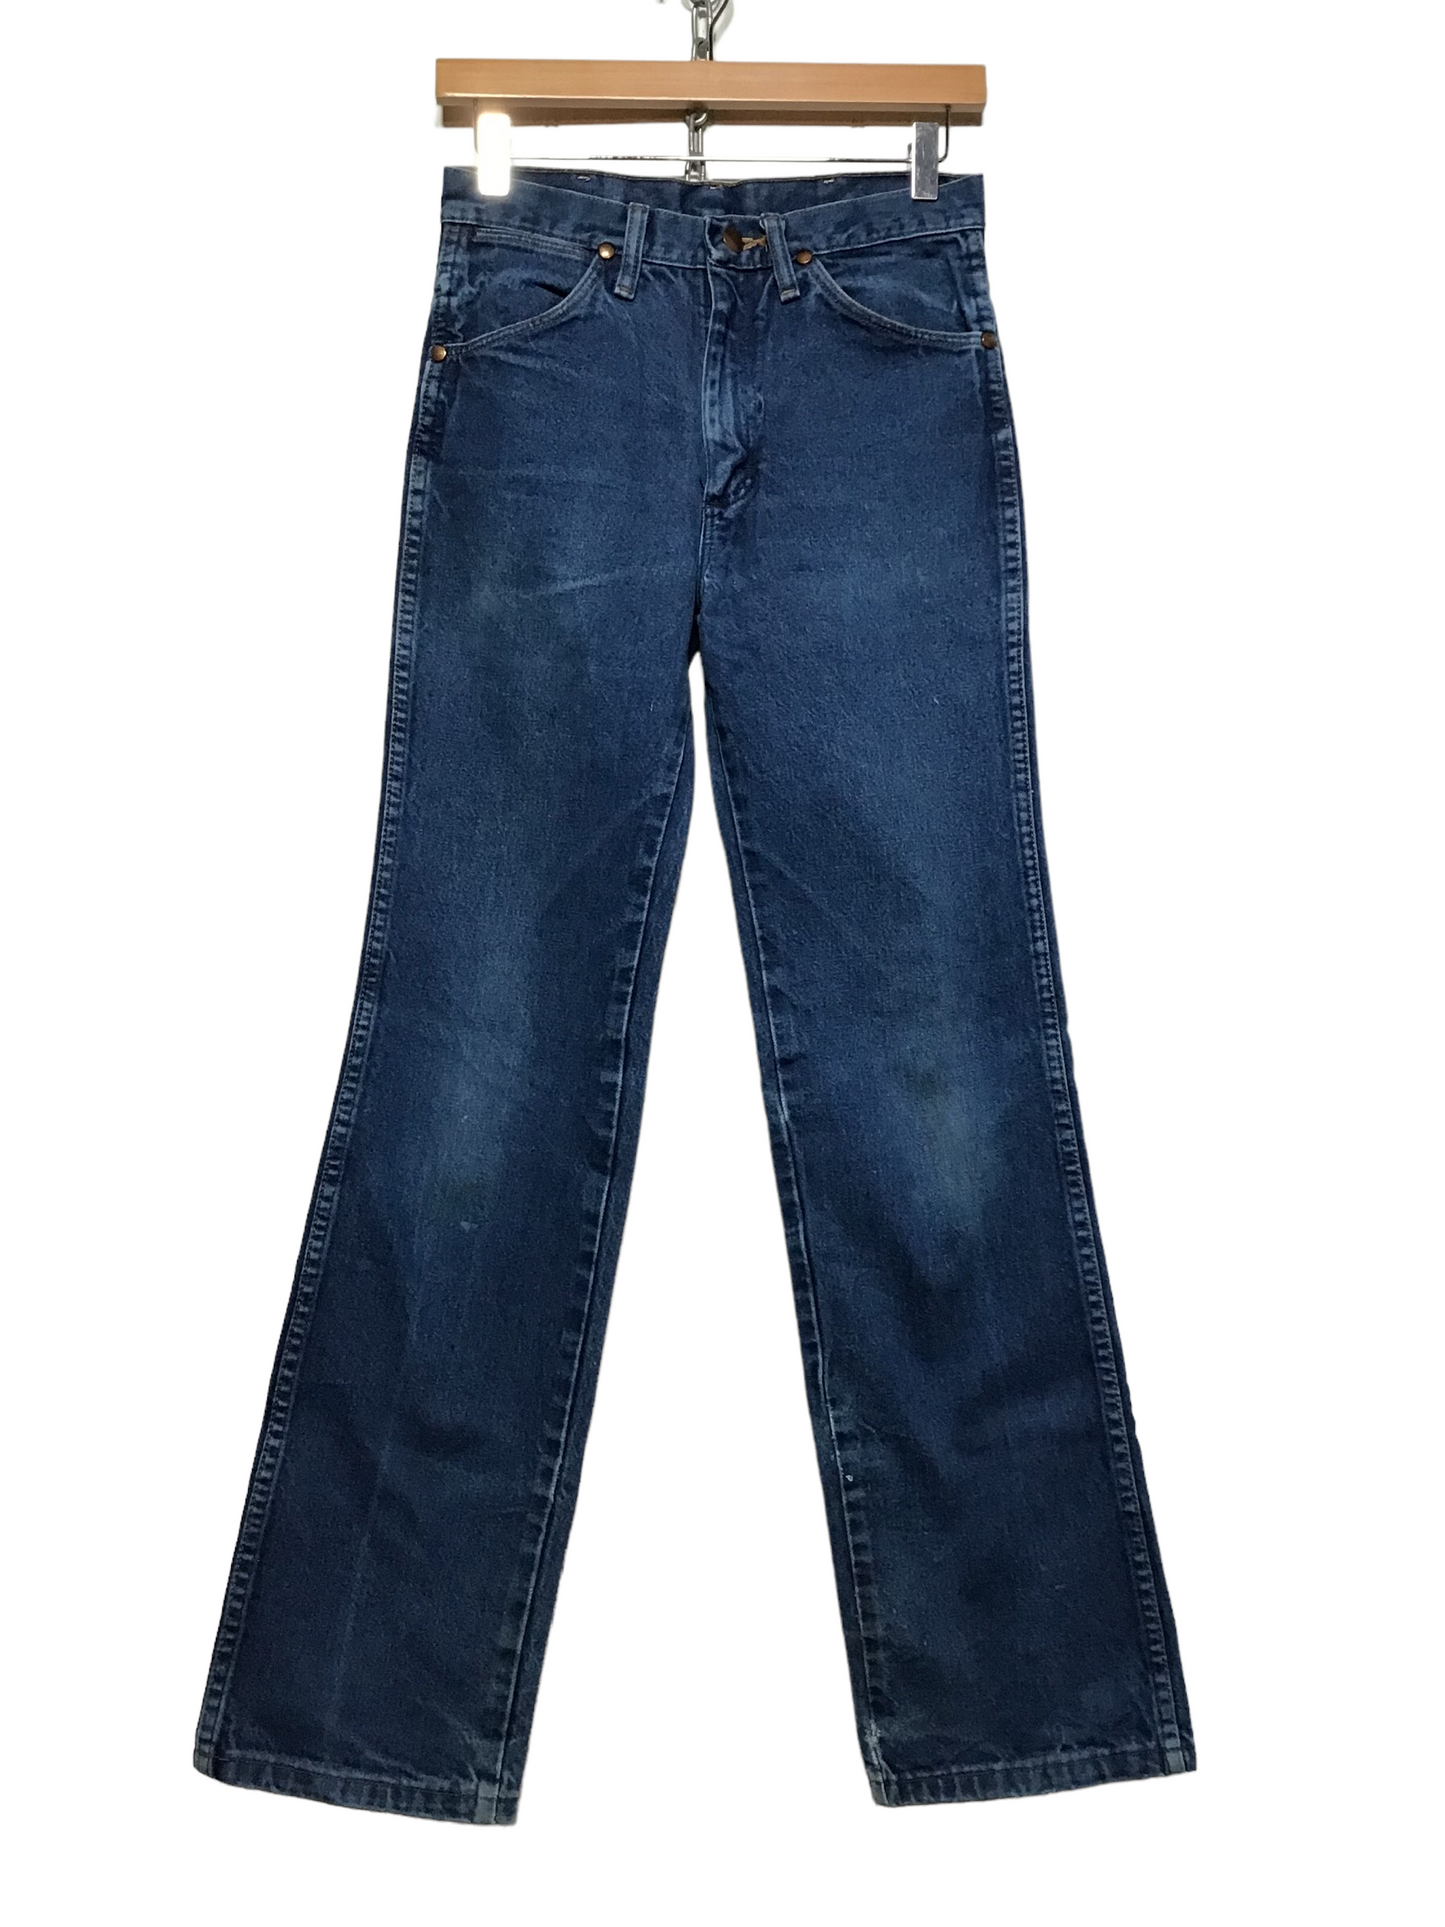 High Waisted Wrangler Jeans (28X30)